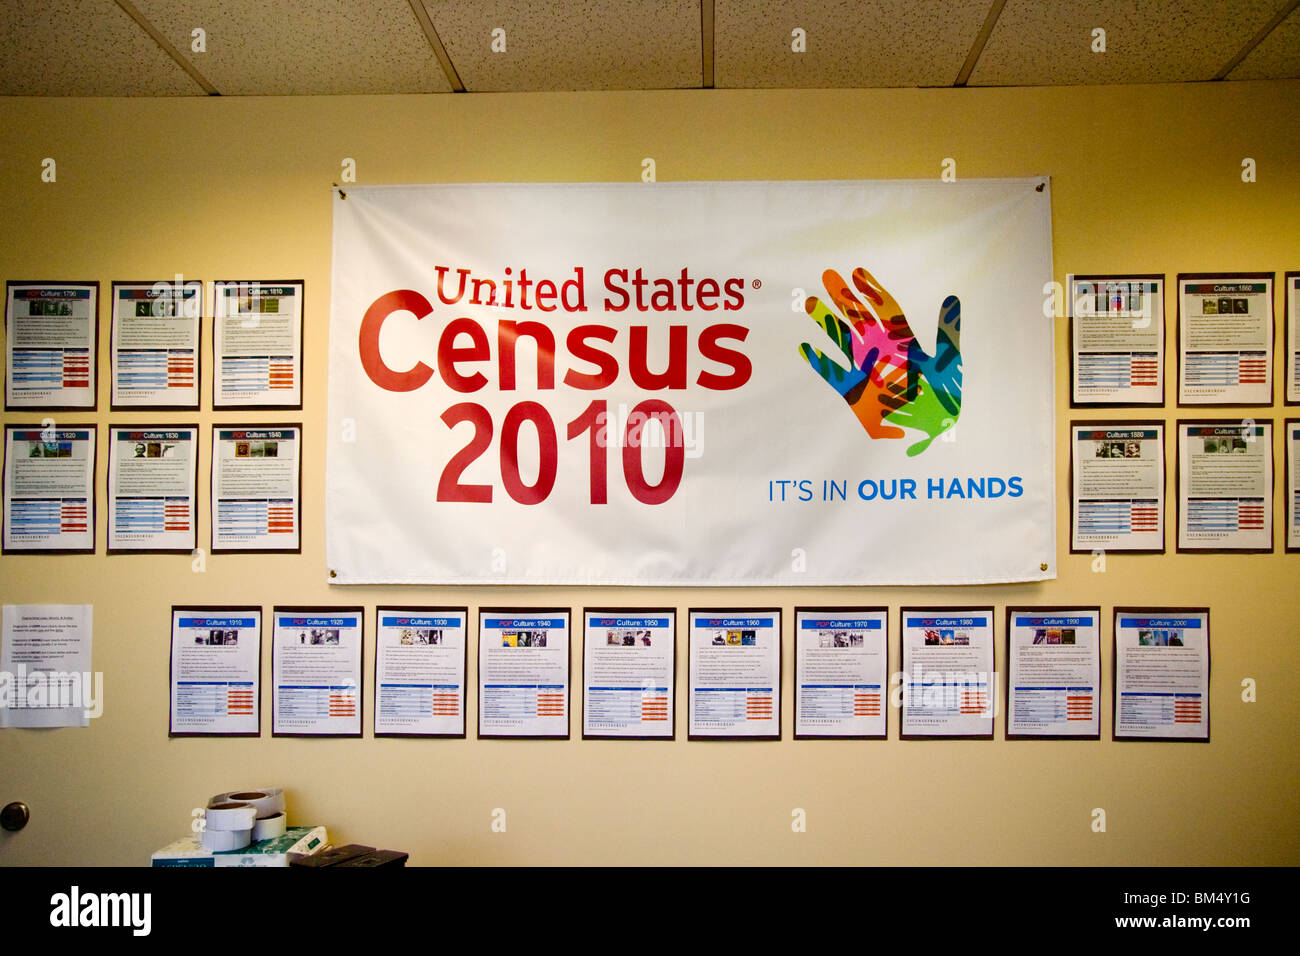 Un recensement des Etats-Unis de 2010 entouré de l'affiche avec les références historiques orne le mur d'un bureau du Bureau du recensement des États-Unis en Californie. Banque D'Images